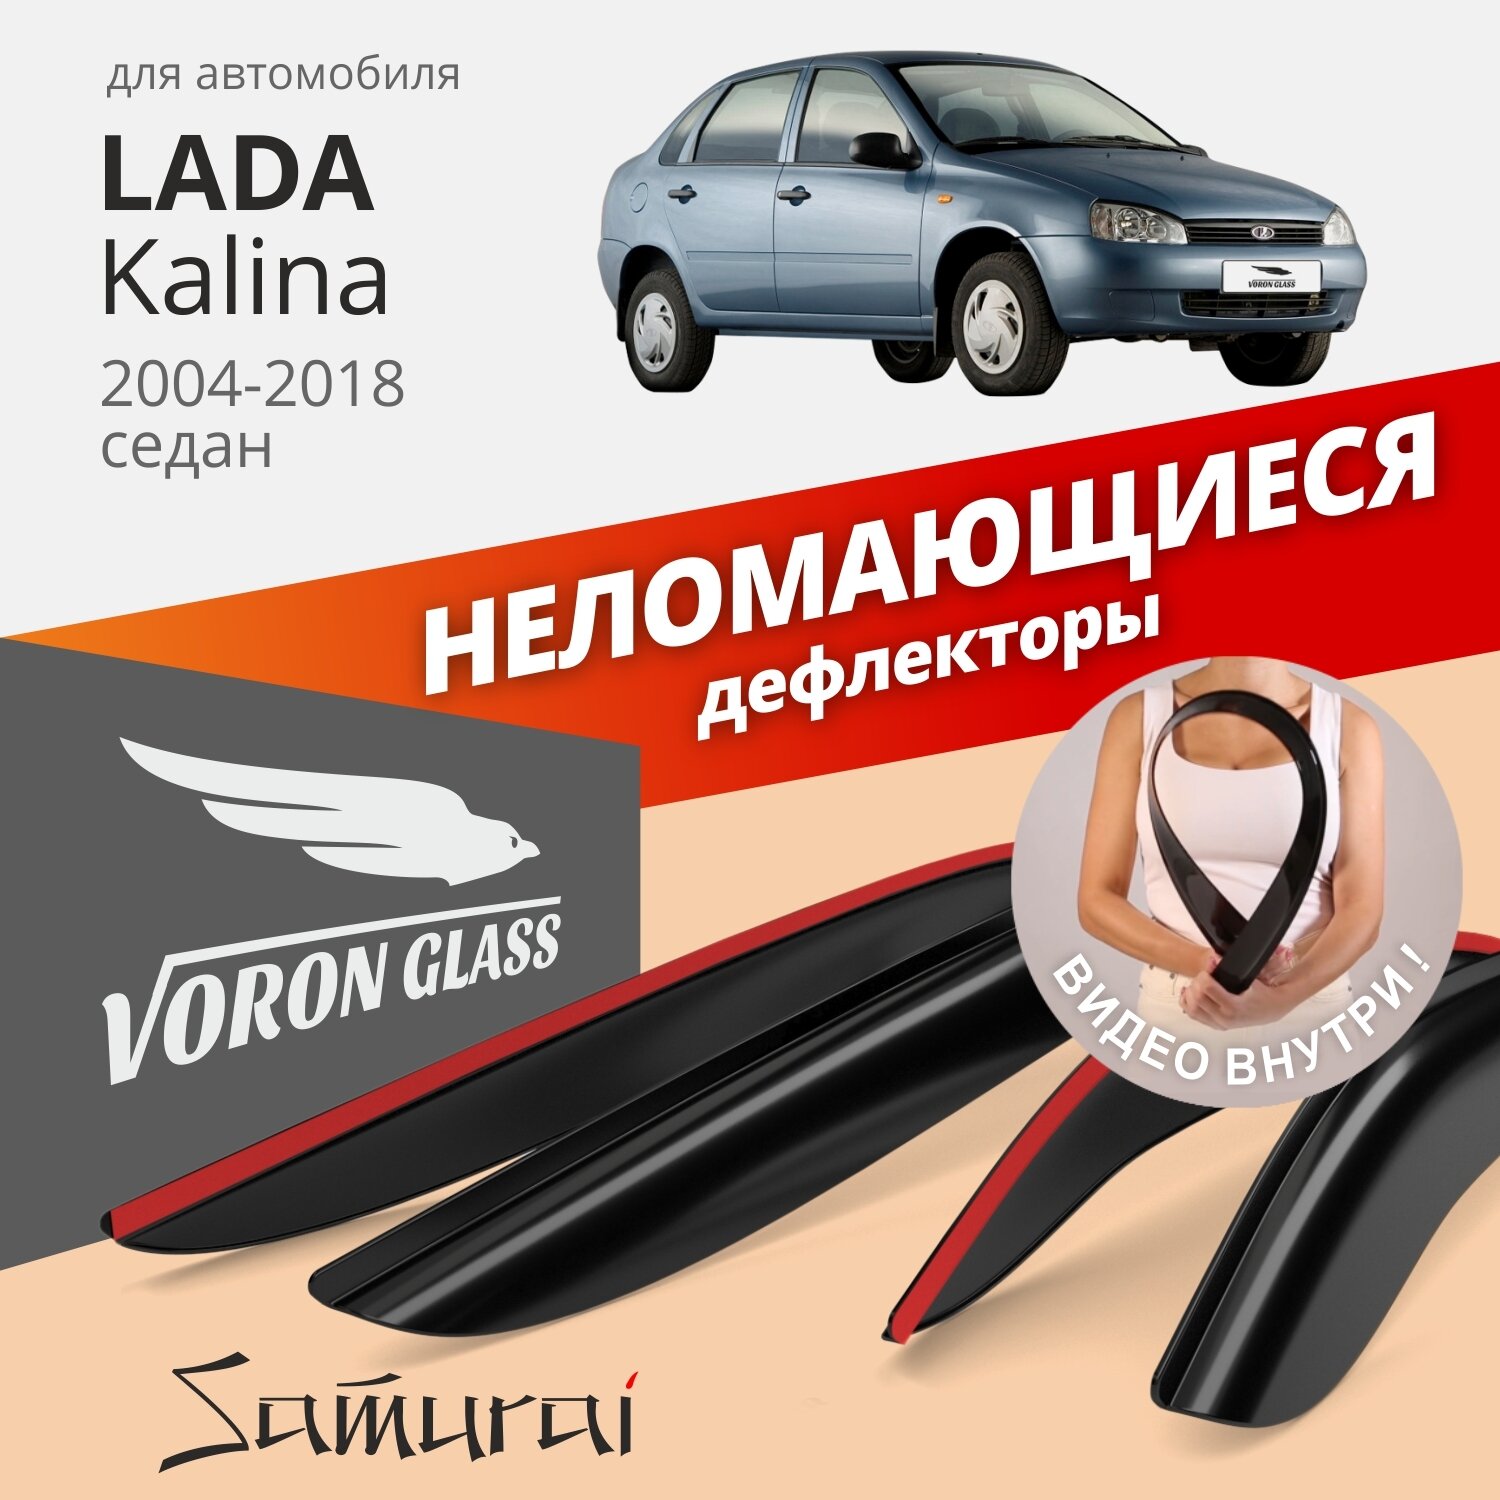 Дефлекторы окон неломающиеся Voron Glass серия Samurai для Lada Kalina I - II 2004-2018 седан хэтчбек накладные 4 шт.